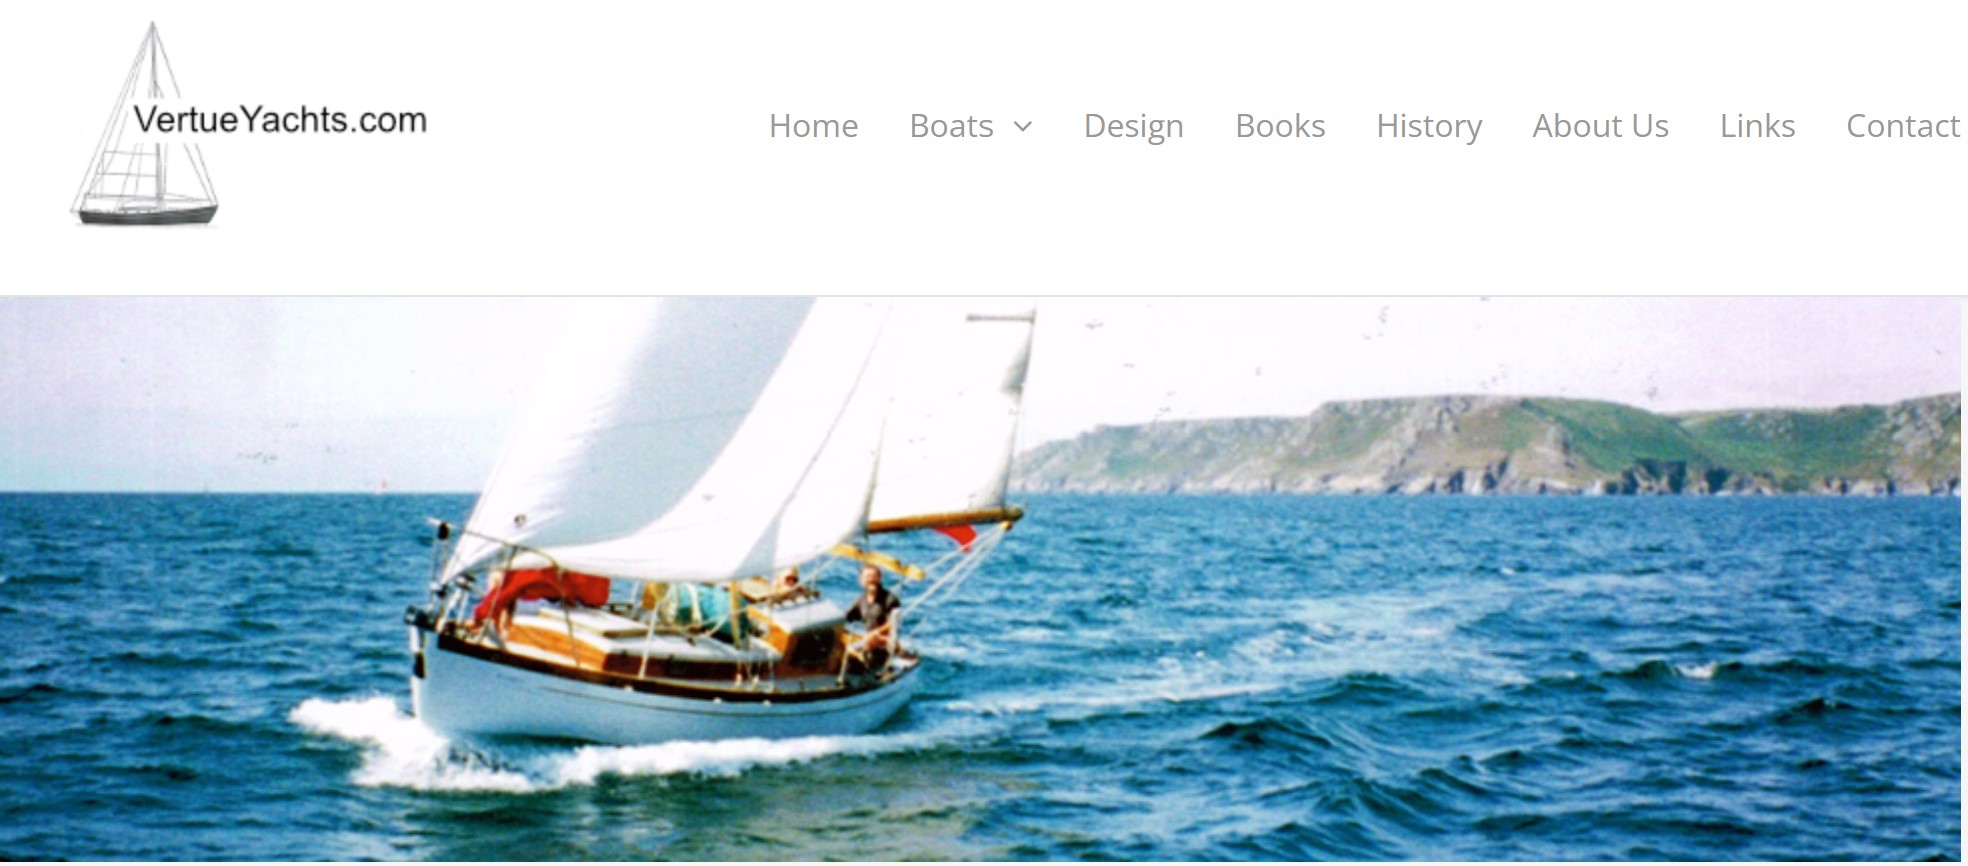 Vertue Yachts Website